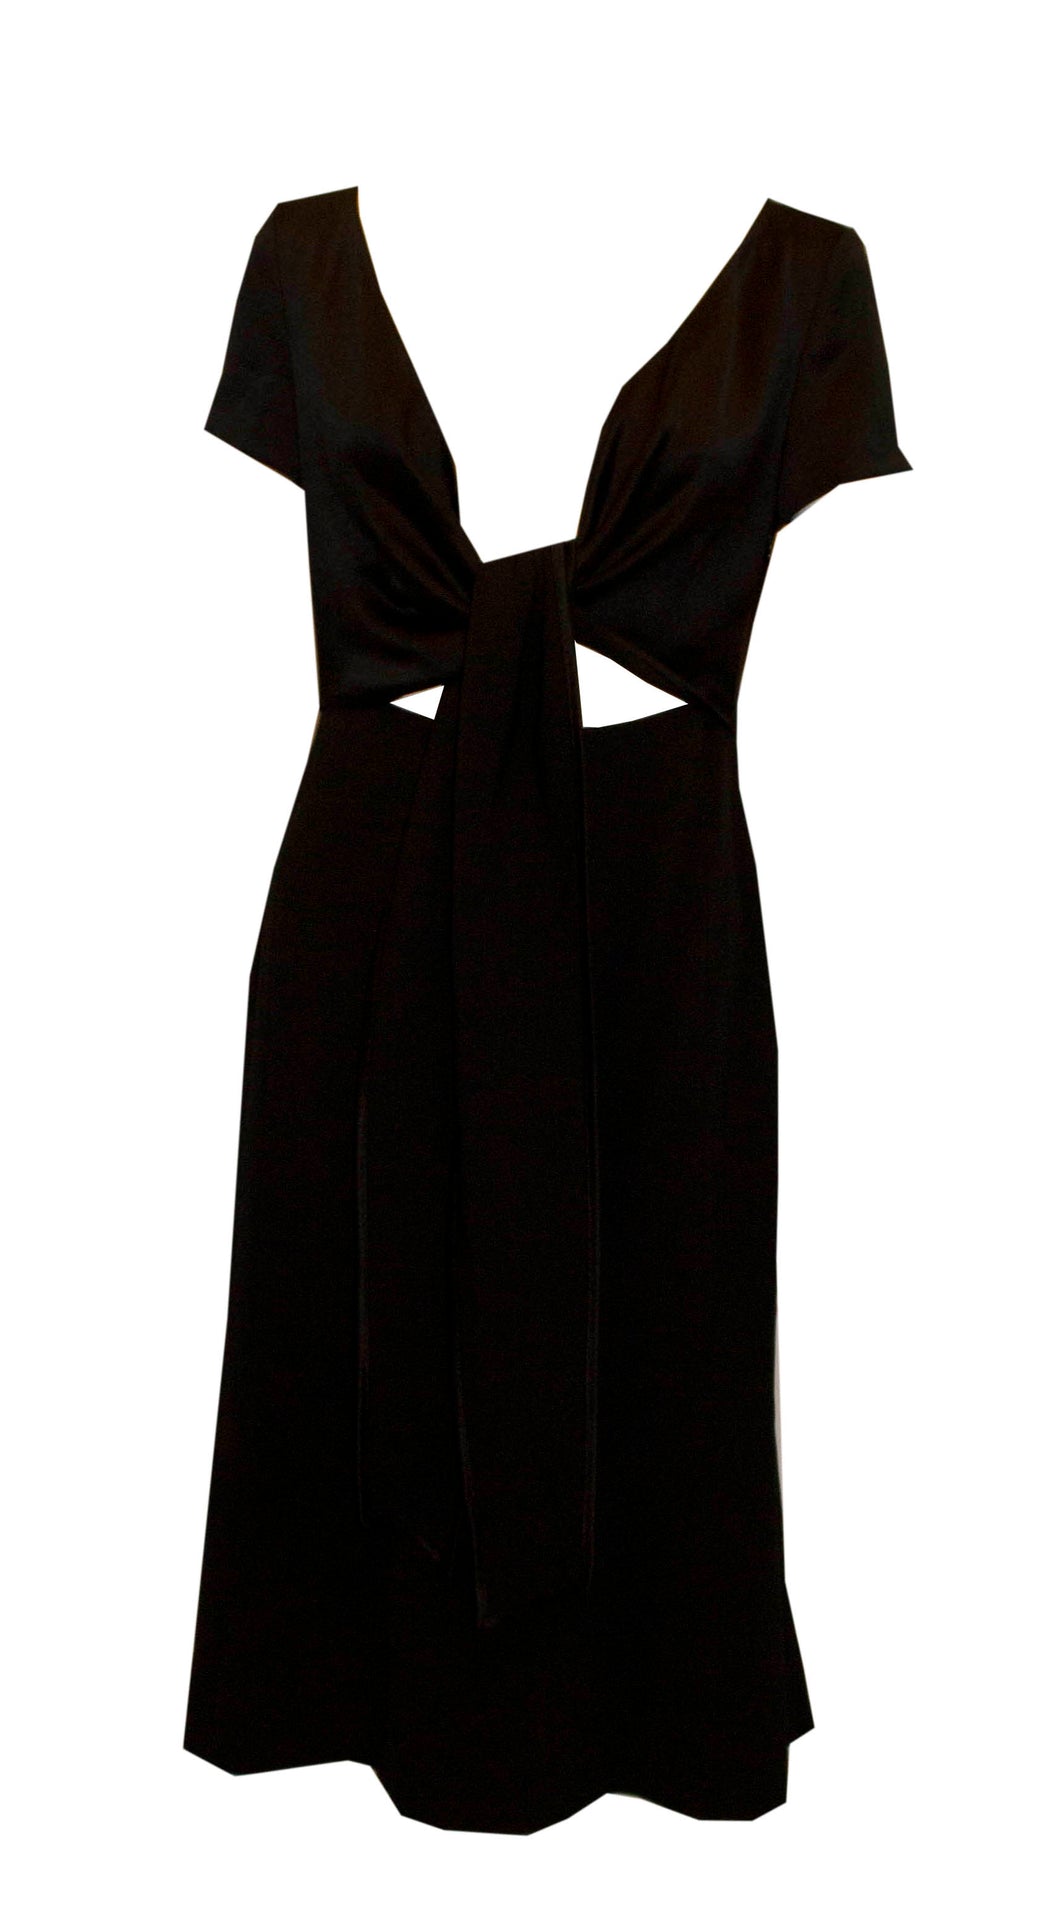 Max Mara Black Silk Dress